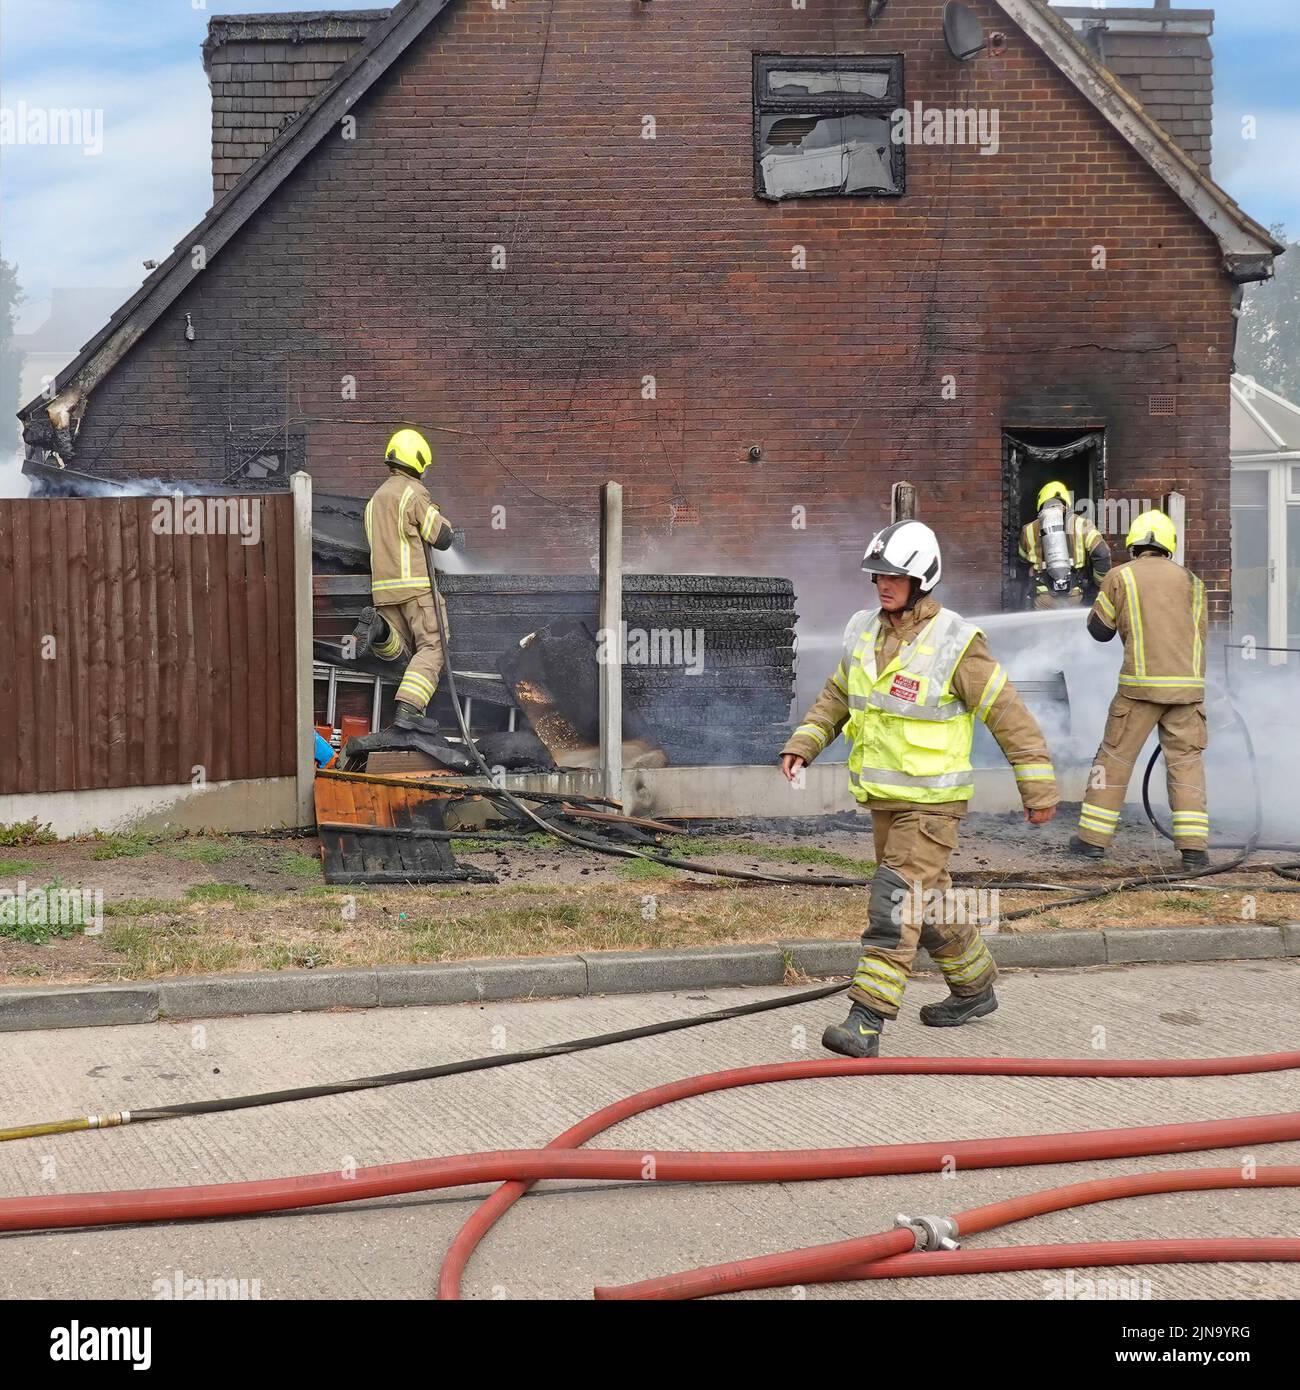 Essex Fire and Rescue Service pompier dans des vêtements de protection travail dangereux et dangereux recherche intérieure amortissement des suites incendie maison Angleterre Royaume-Uni Banque D'Images